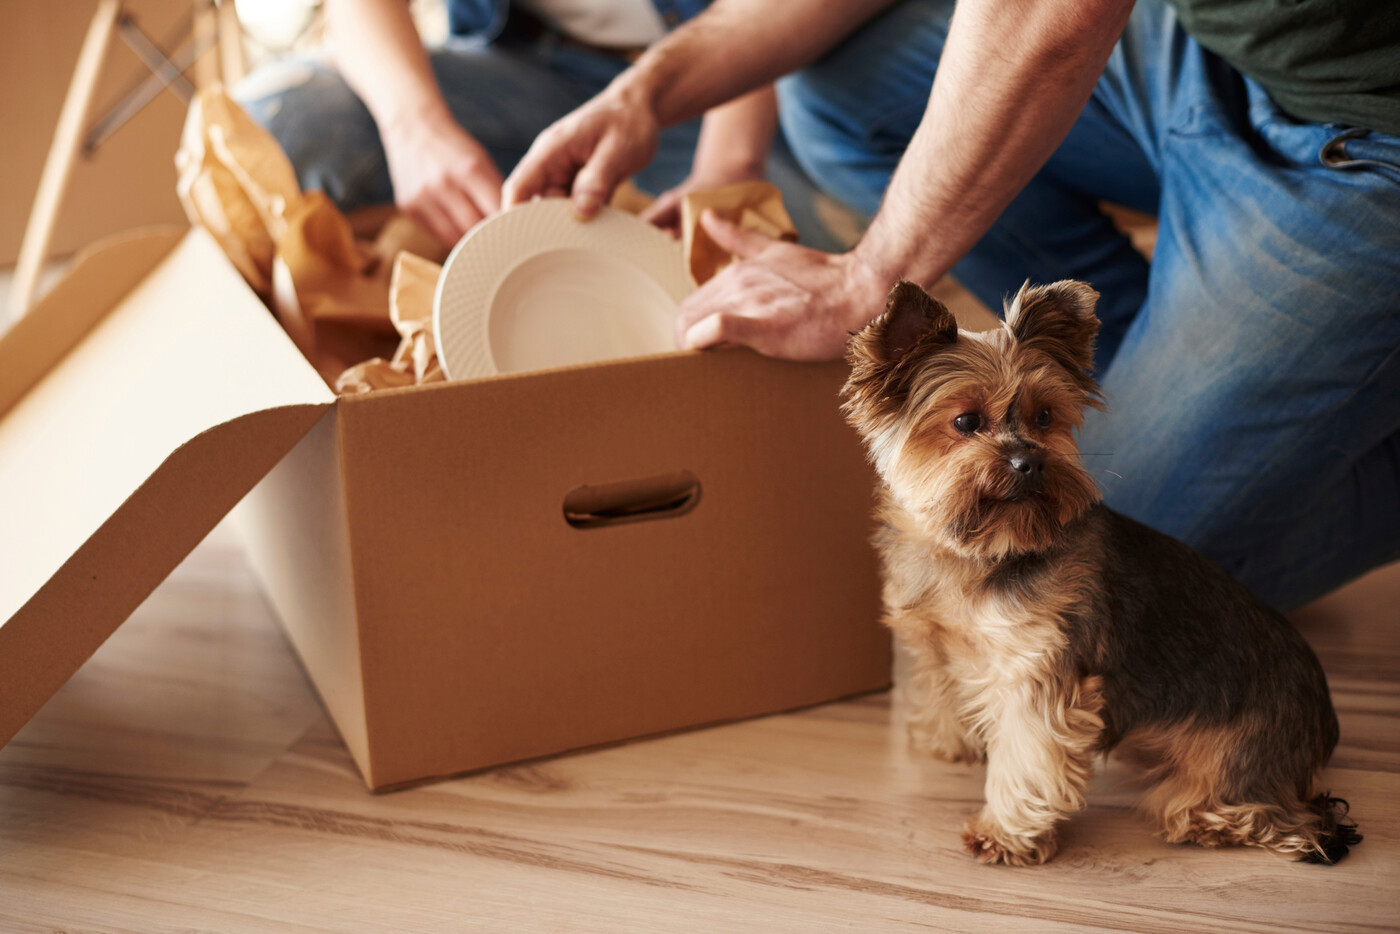 Kisten packen und auf Hund aufpassen: Vor allem Hunde sollten während des Umzugs von einer vertrauten Person fremdbetreut werden. So können stressige Situationen vermieden werden.